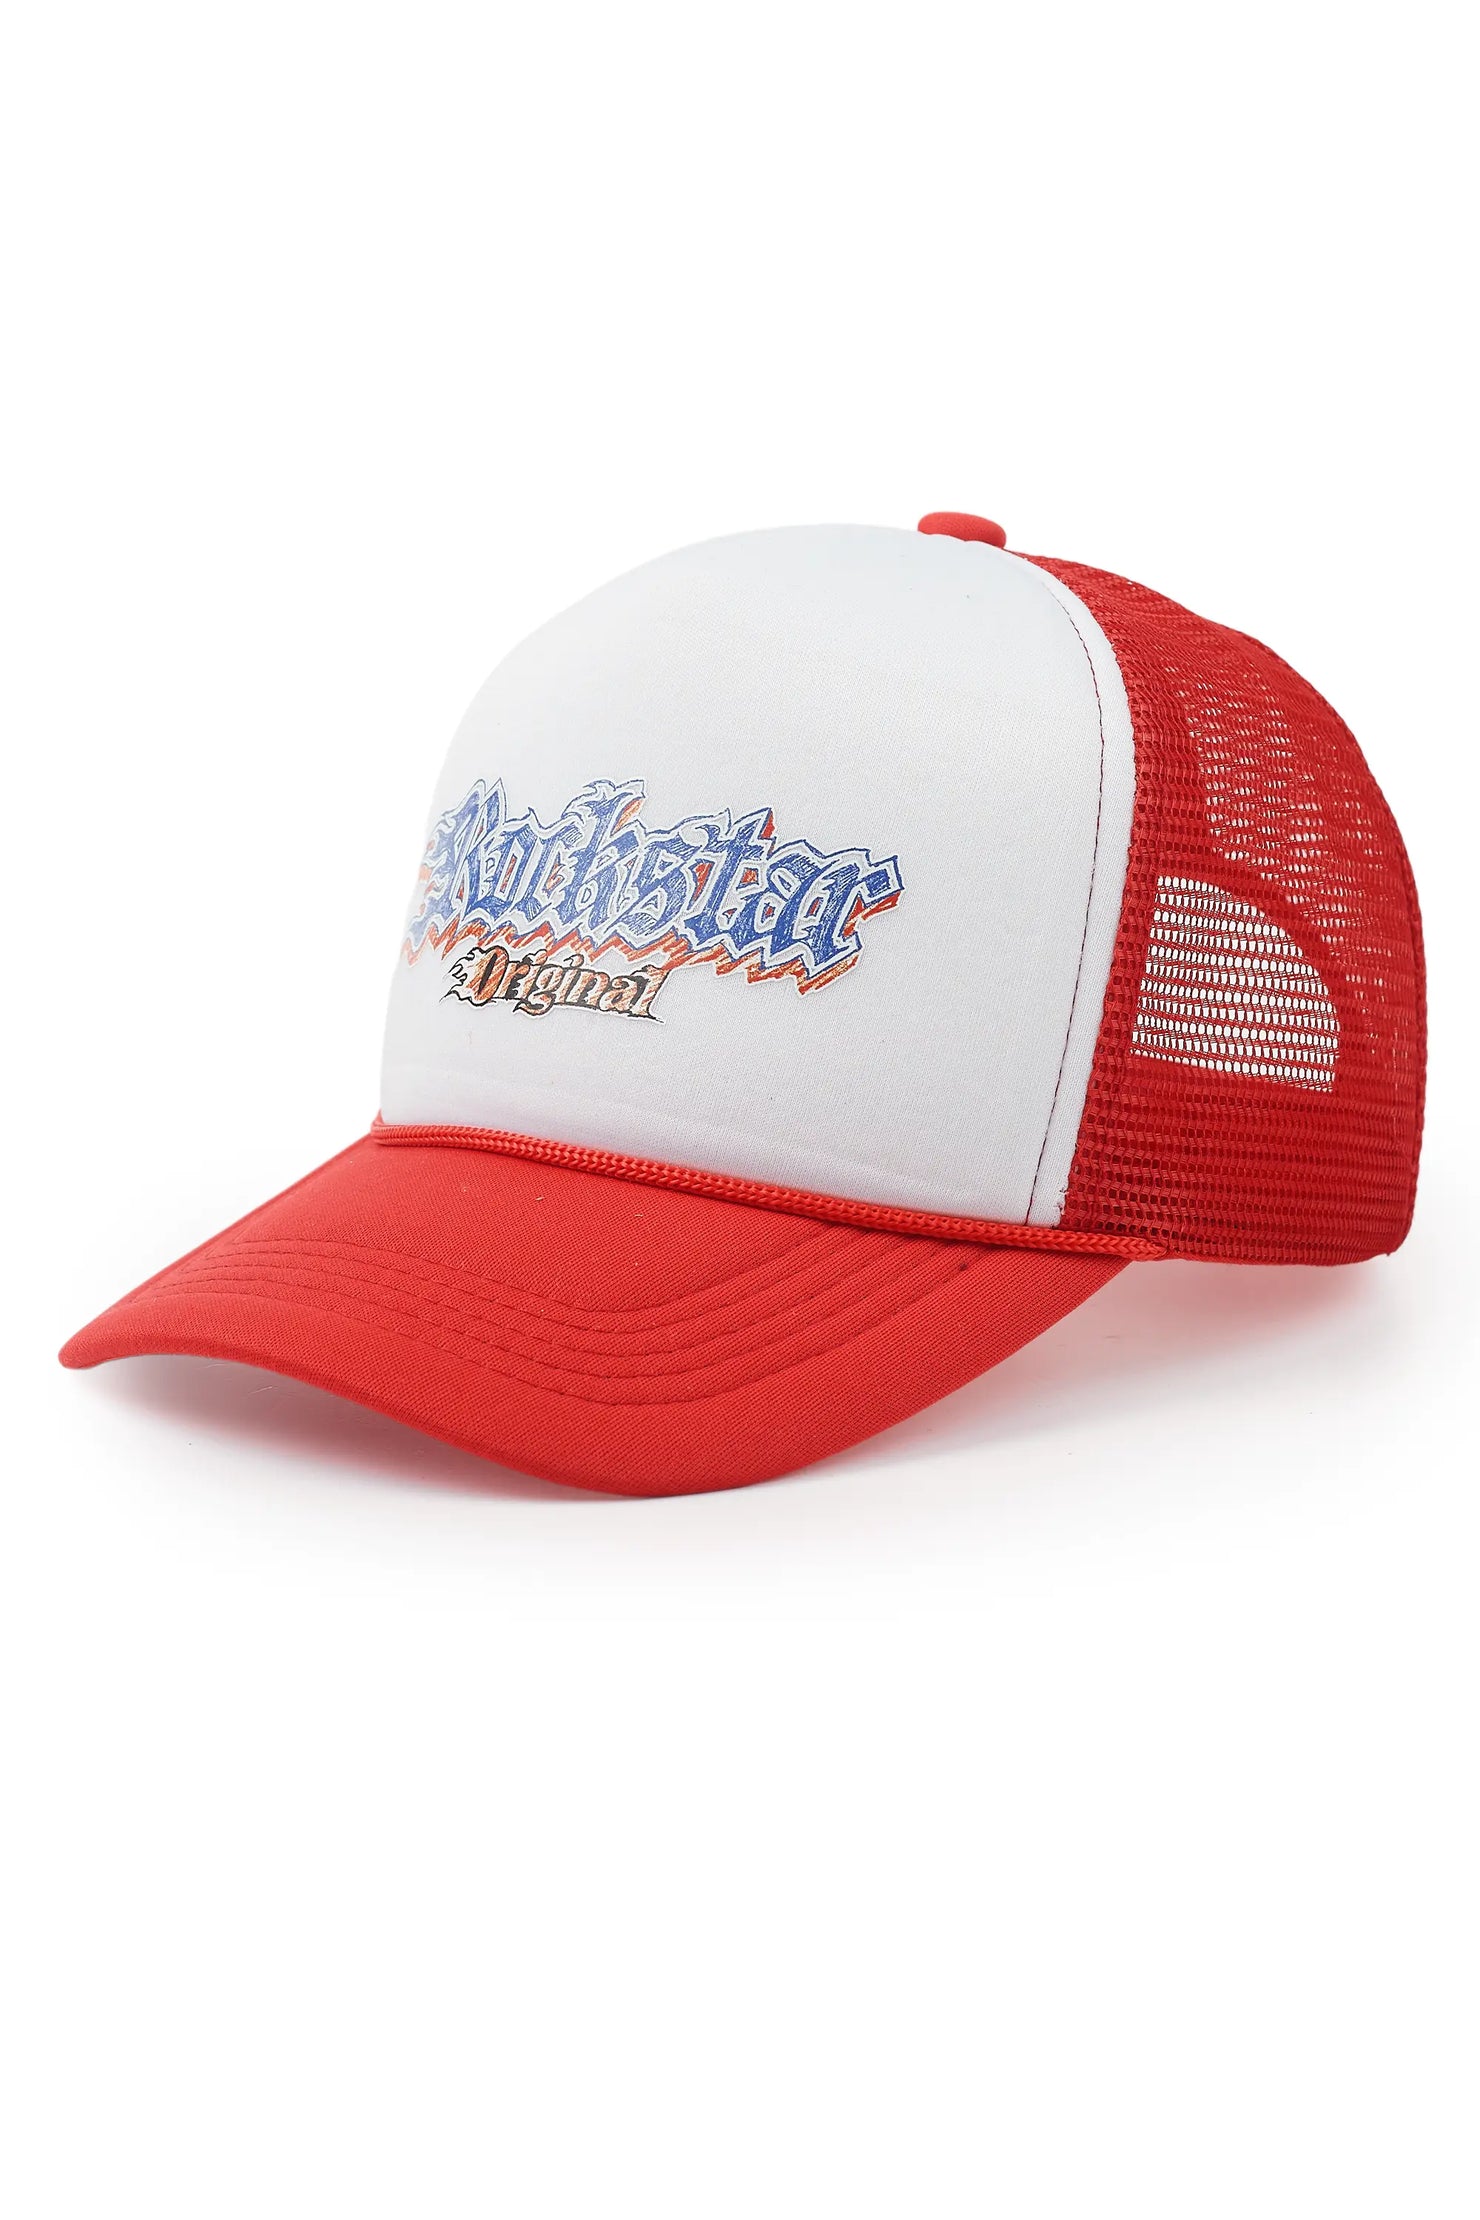 Motor White/Red Trucker Hat